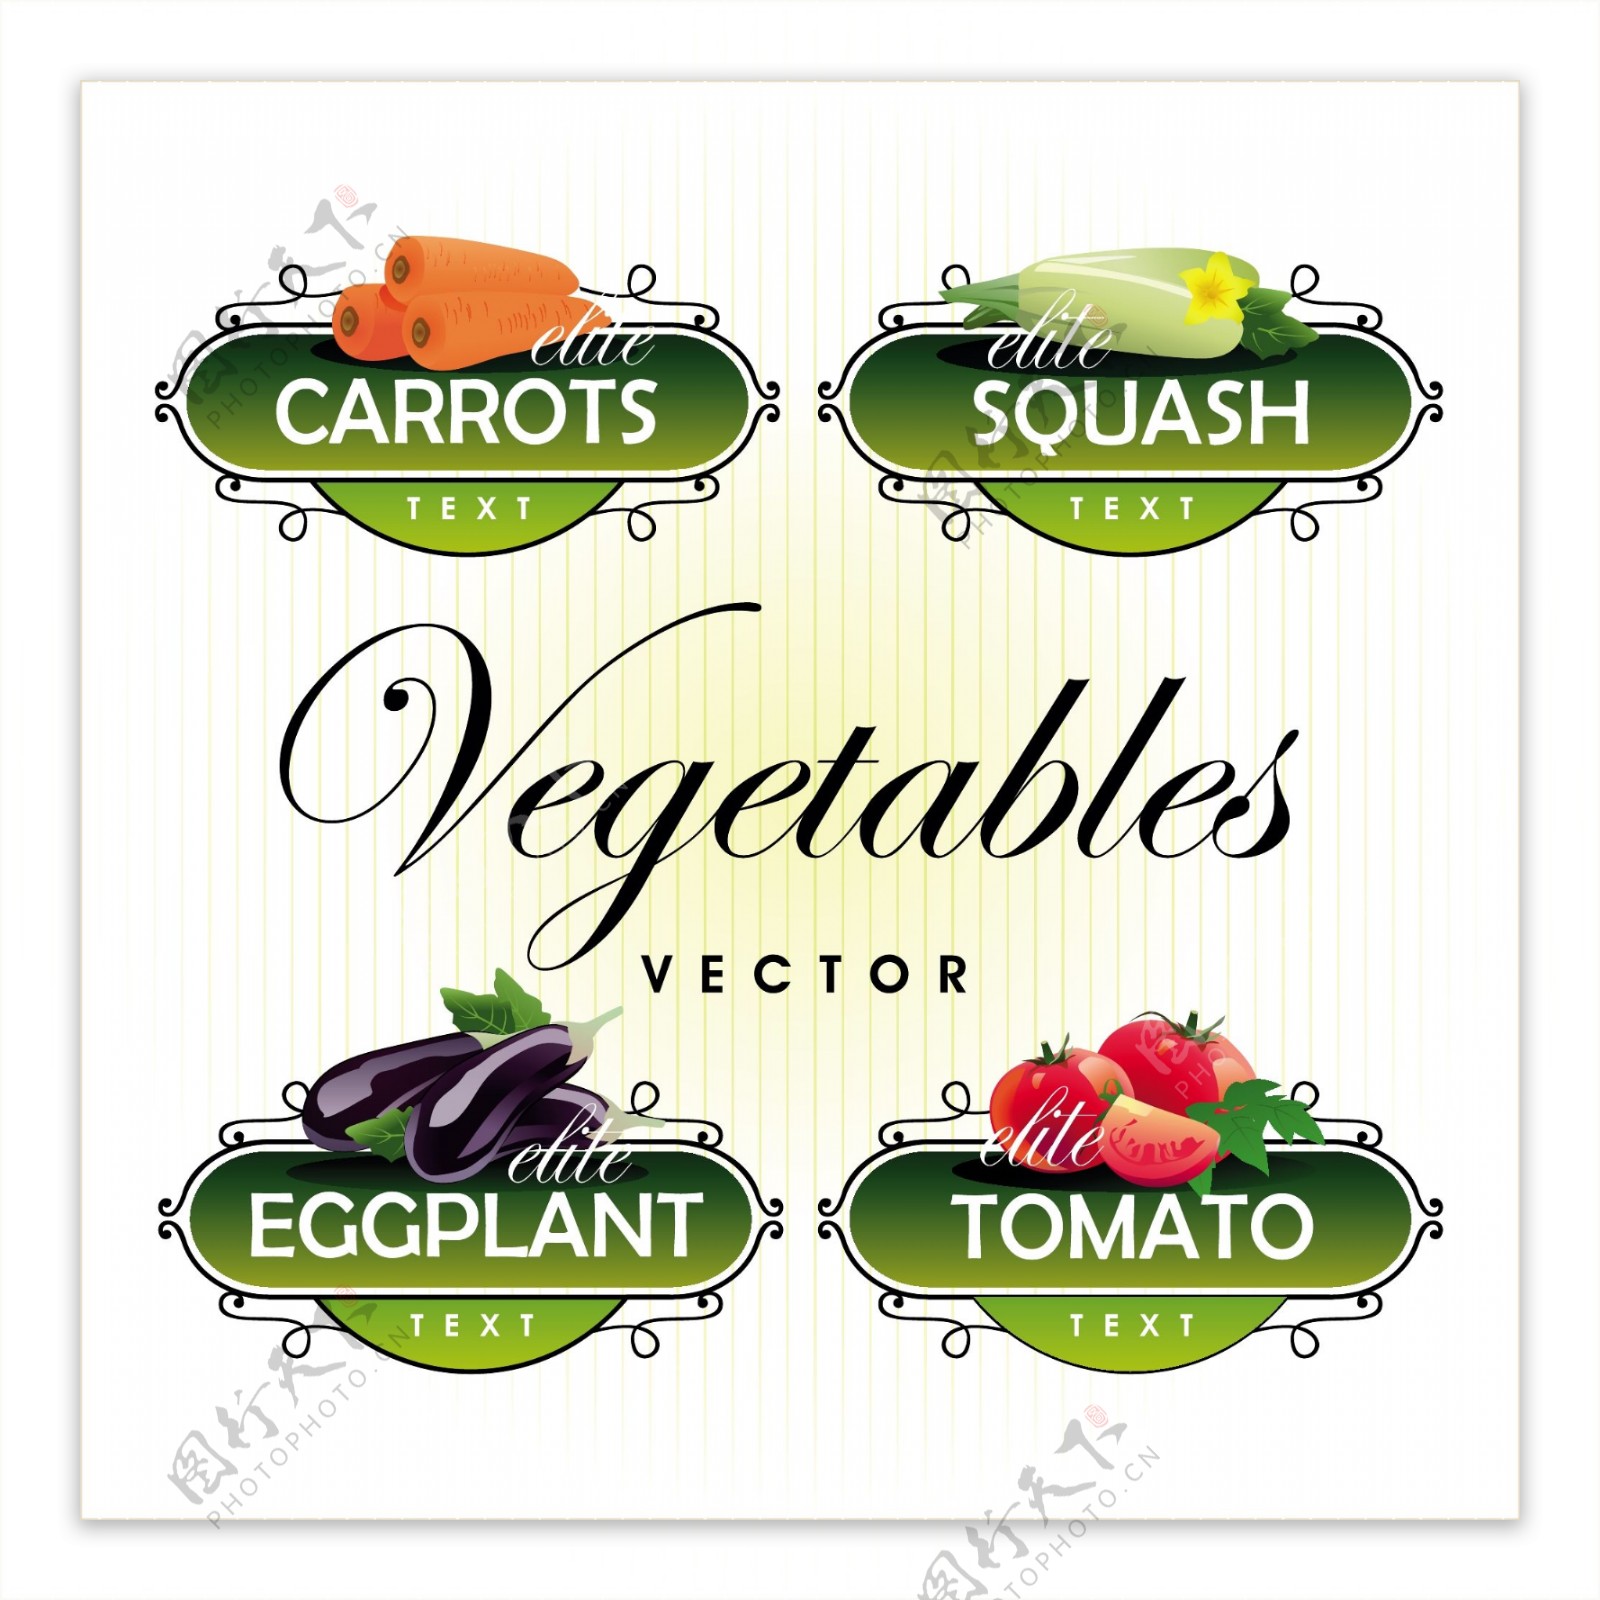 新鲜的水果和蔬菜的标签向量03